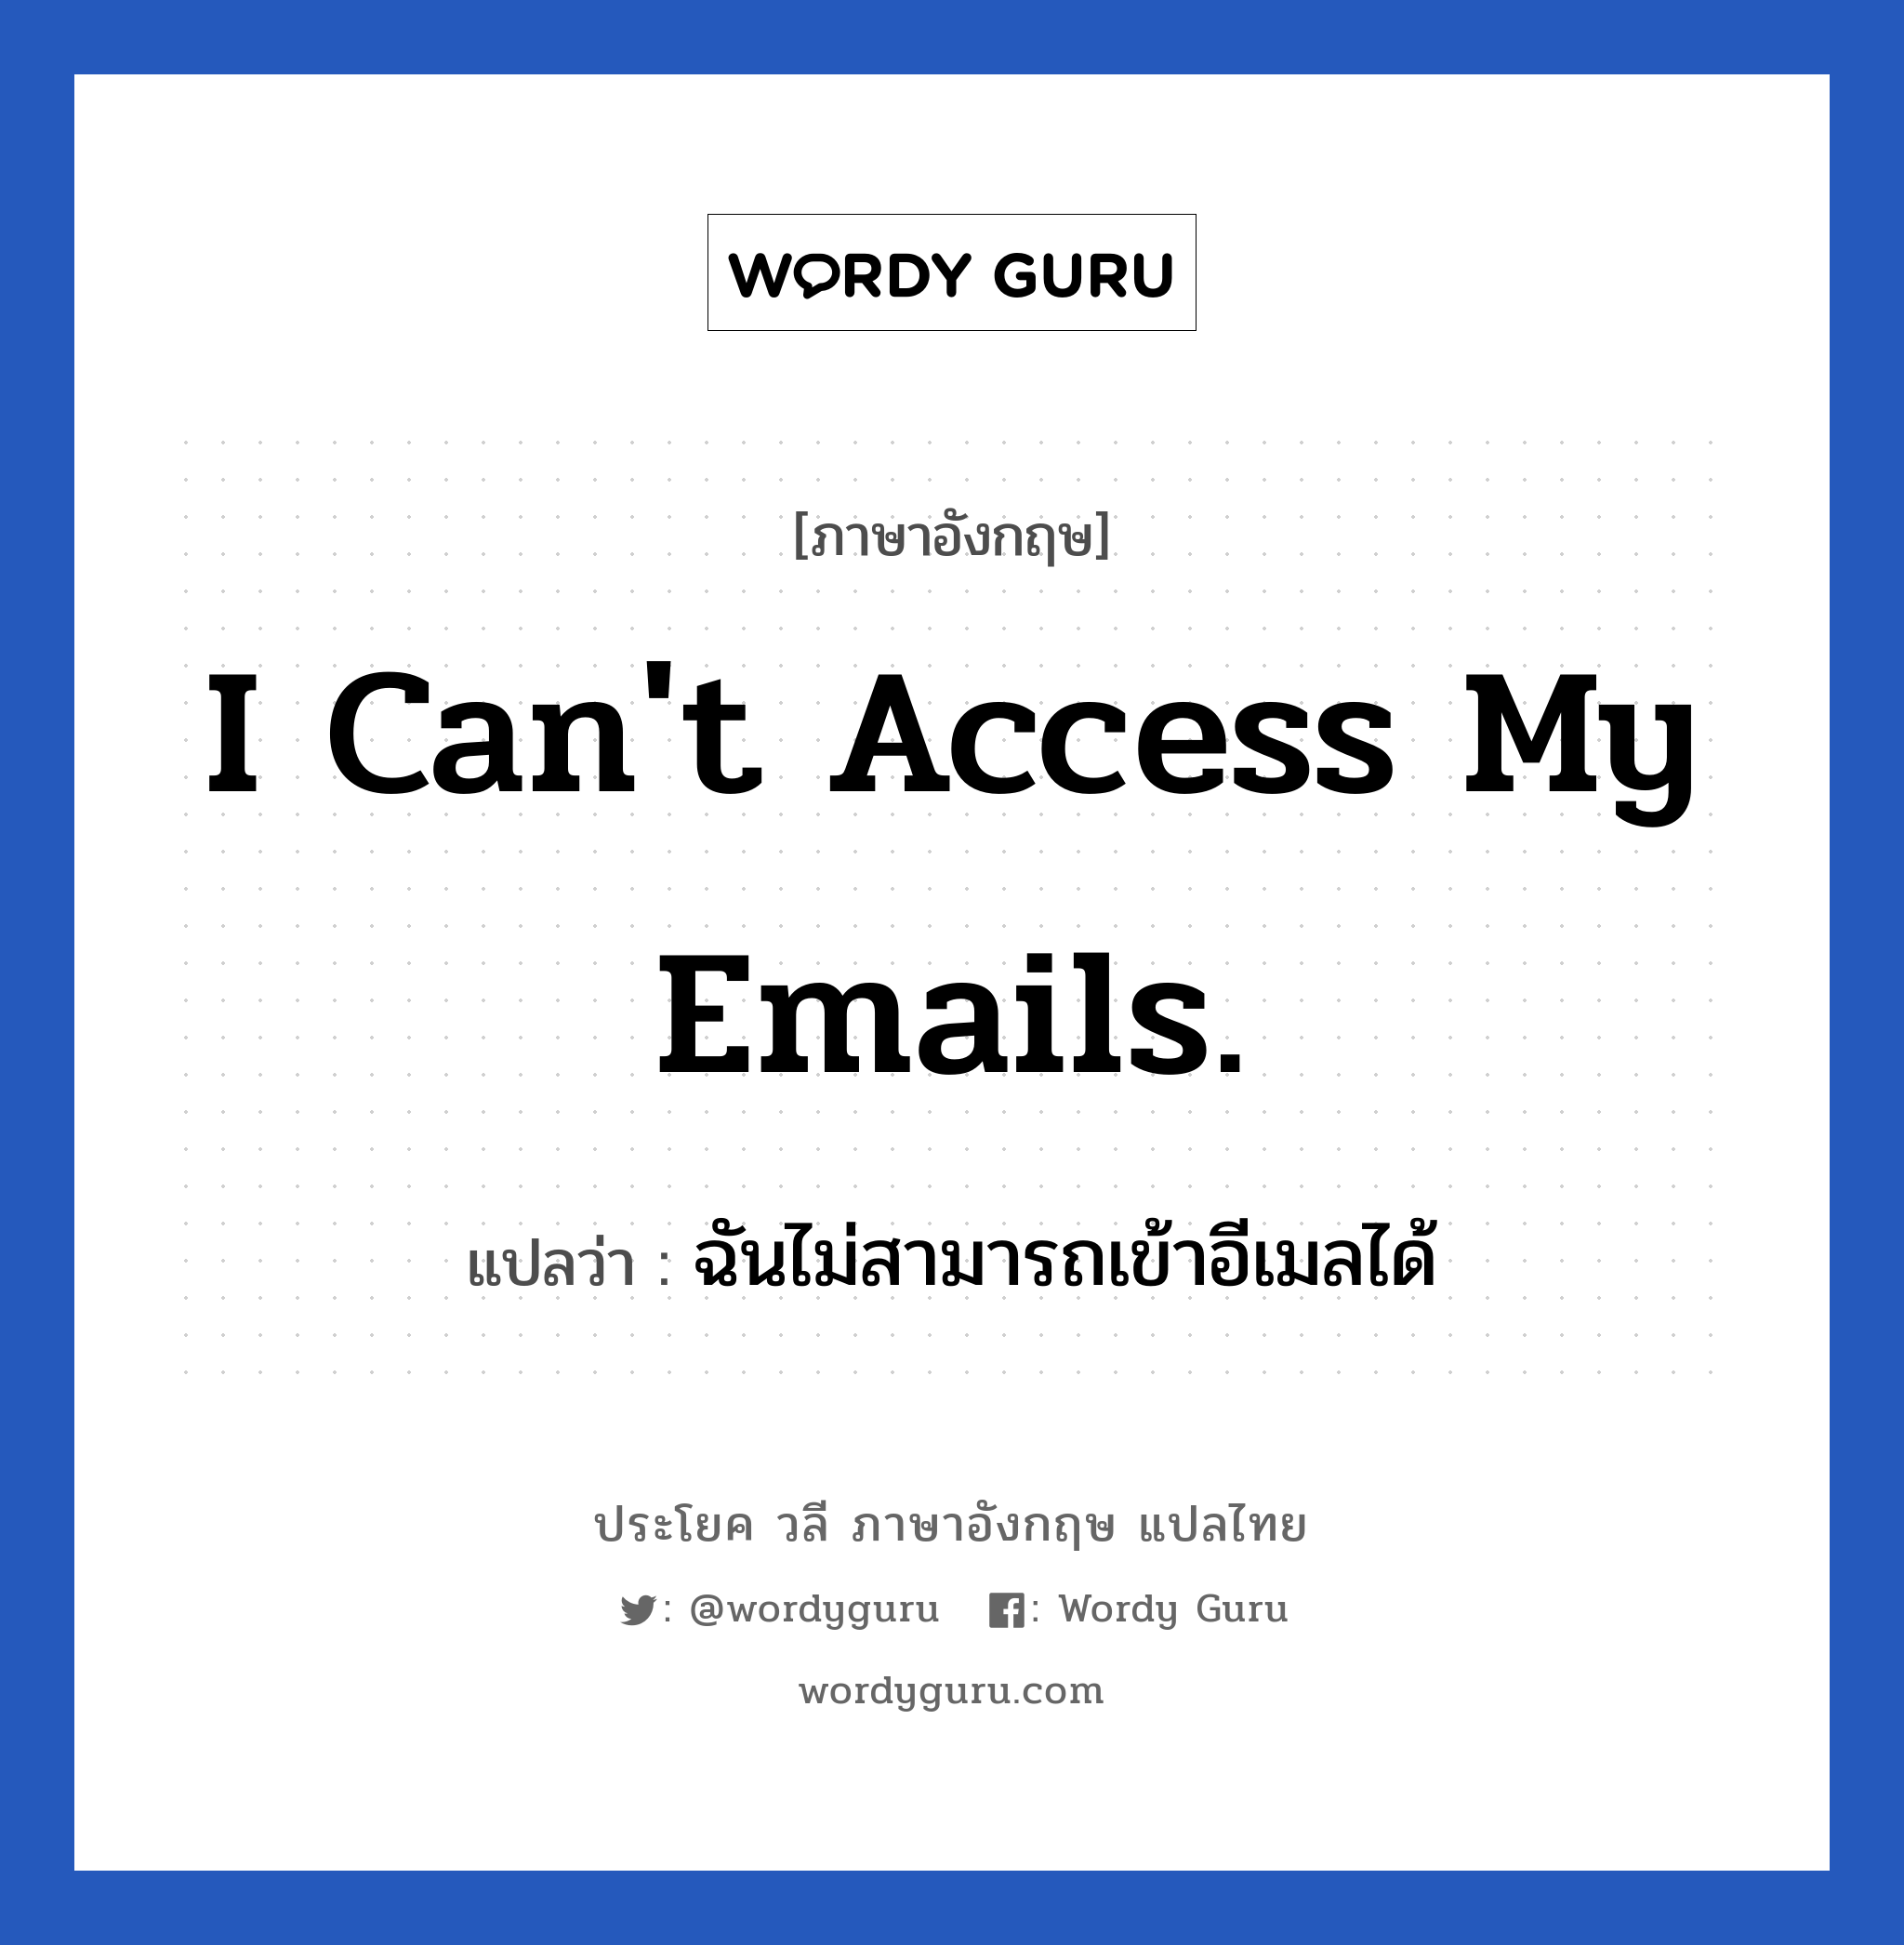 ฉันไม่สามารถเข้าอีเมลได้ ภาษาอังกฤษ?, วลีภาษาอังกฤษ ฉันไม่สามารถเข้าอีเมลได้ แปลว่า I can't access my emails.